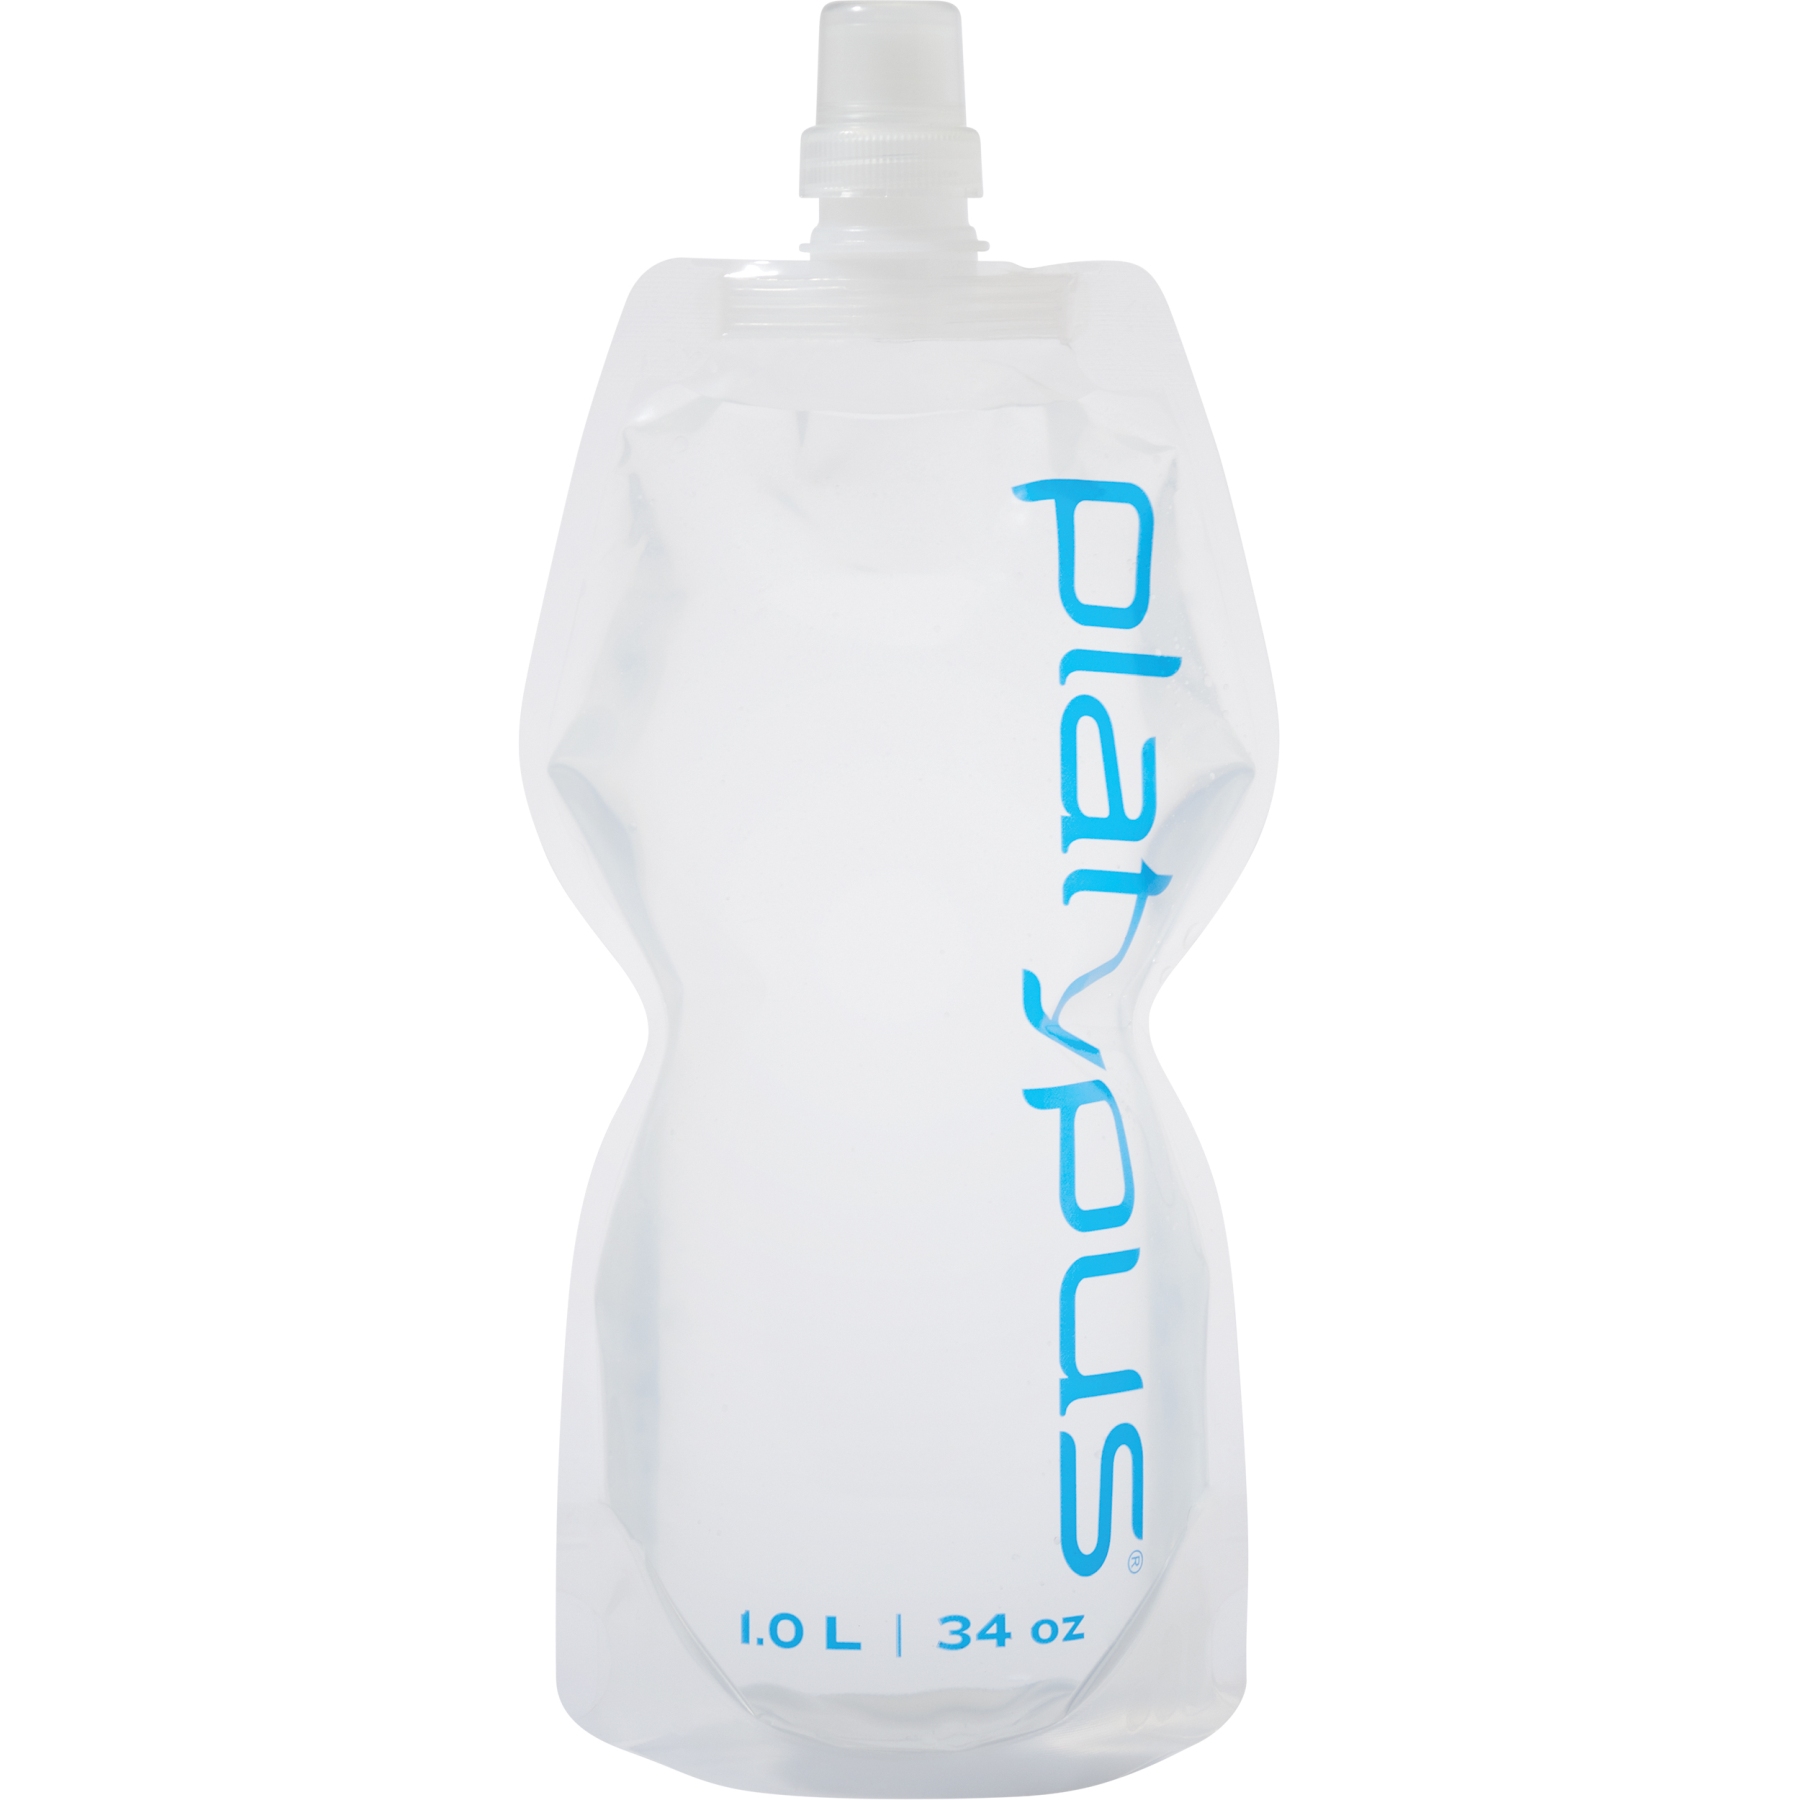 Produktbild von Platypus SoftBottle Flexible Trinkflasche mit Push-Pull Cap 1L - Logo